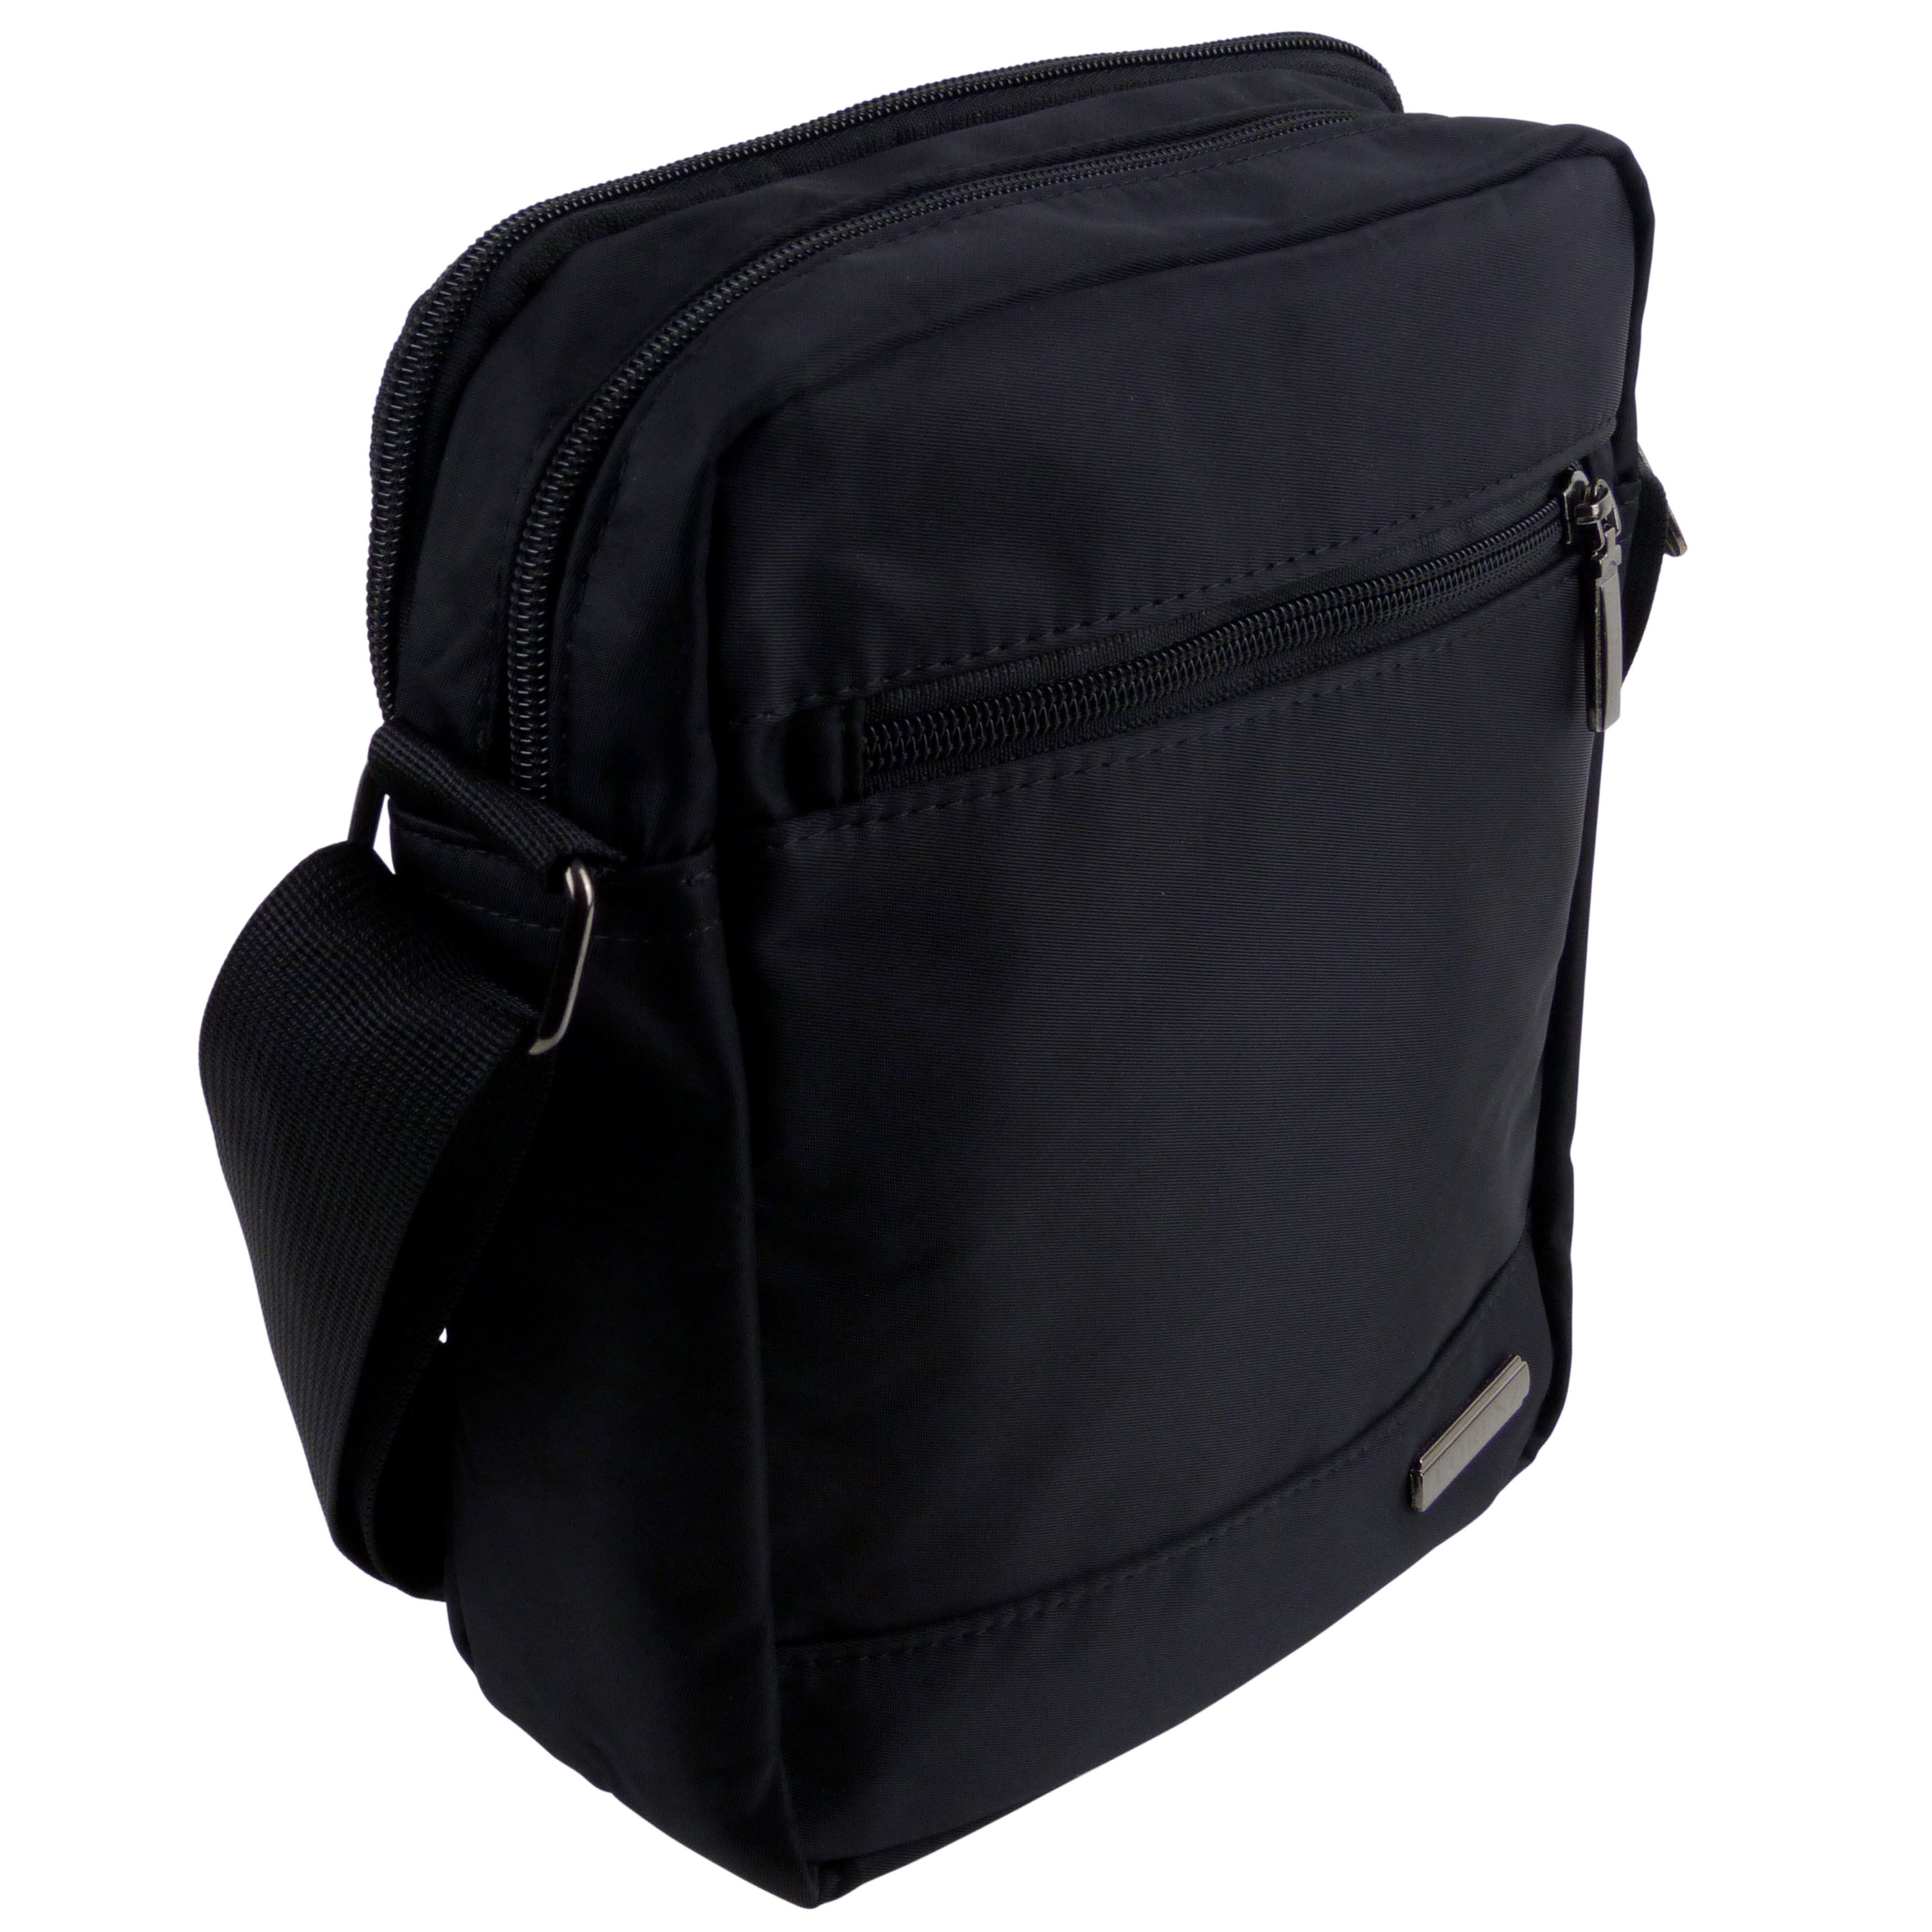 Padded Nylon Mens Cross Body Bag Shoulder Bag | eBay